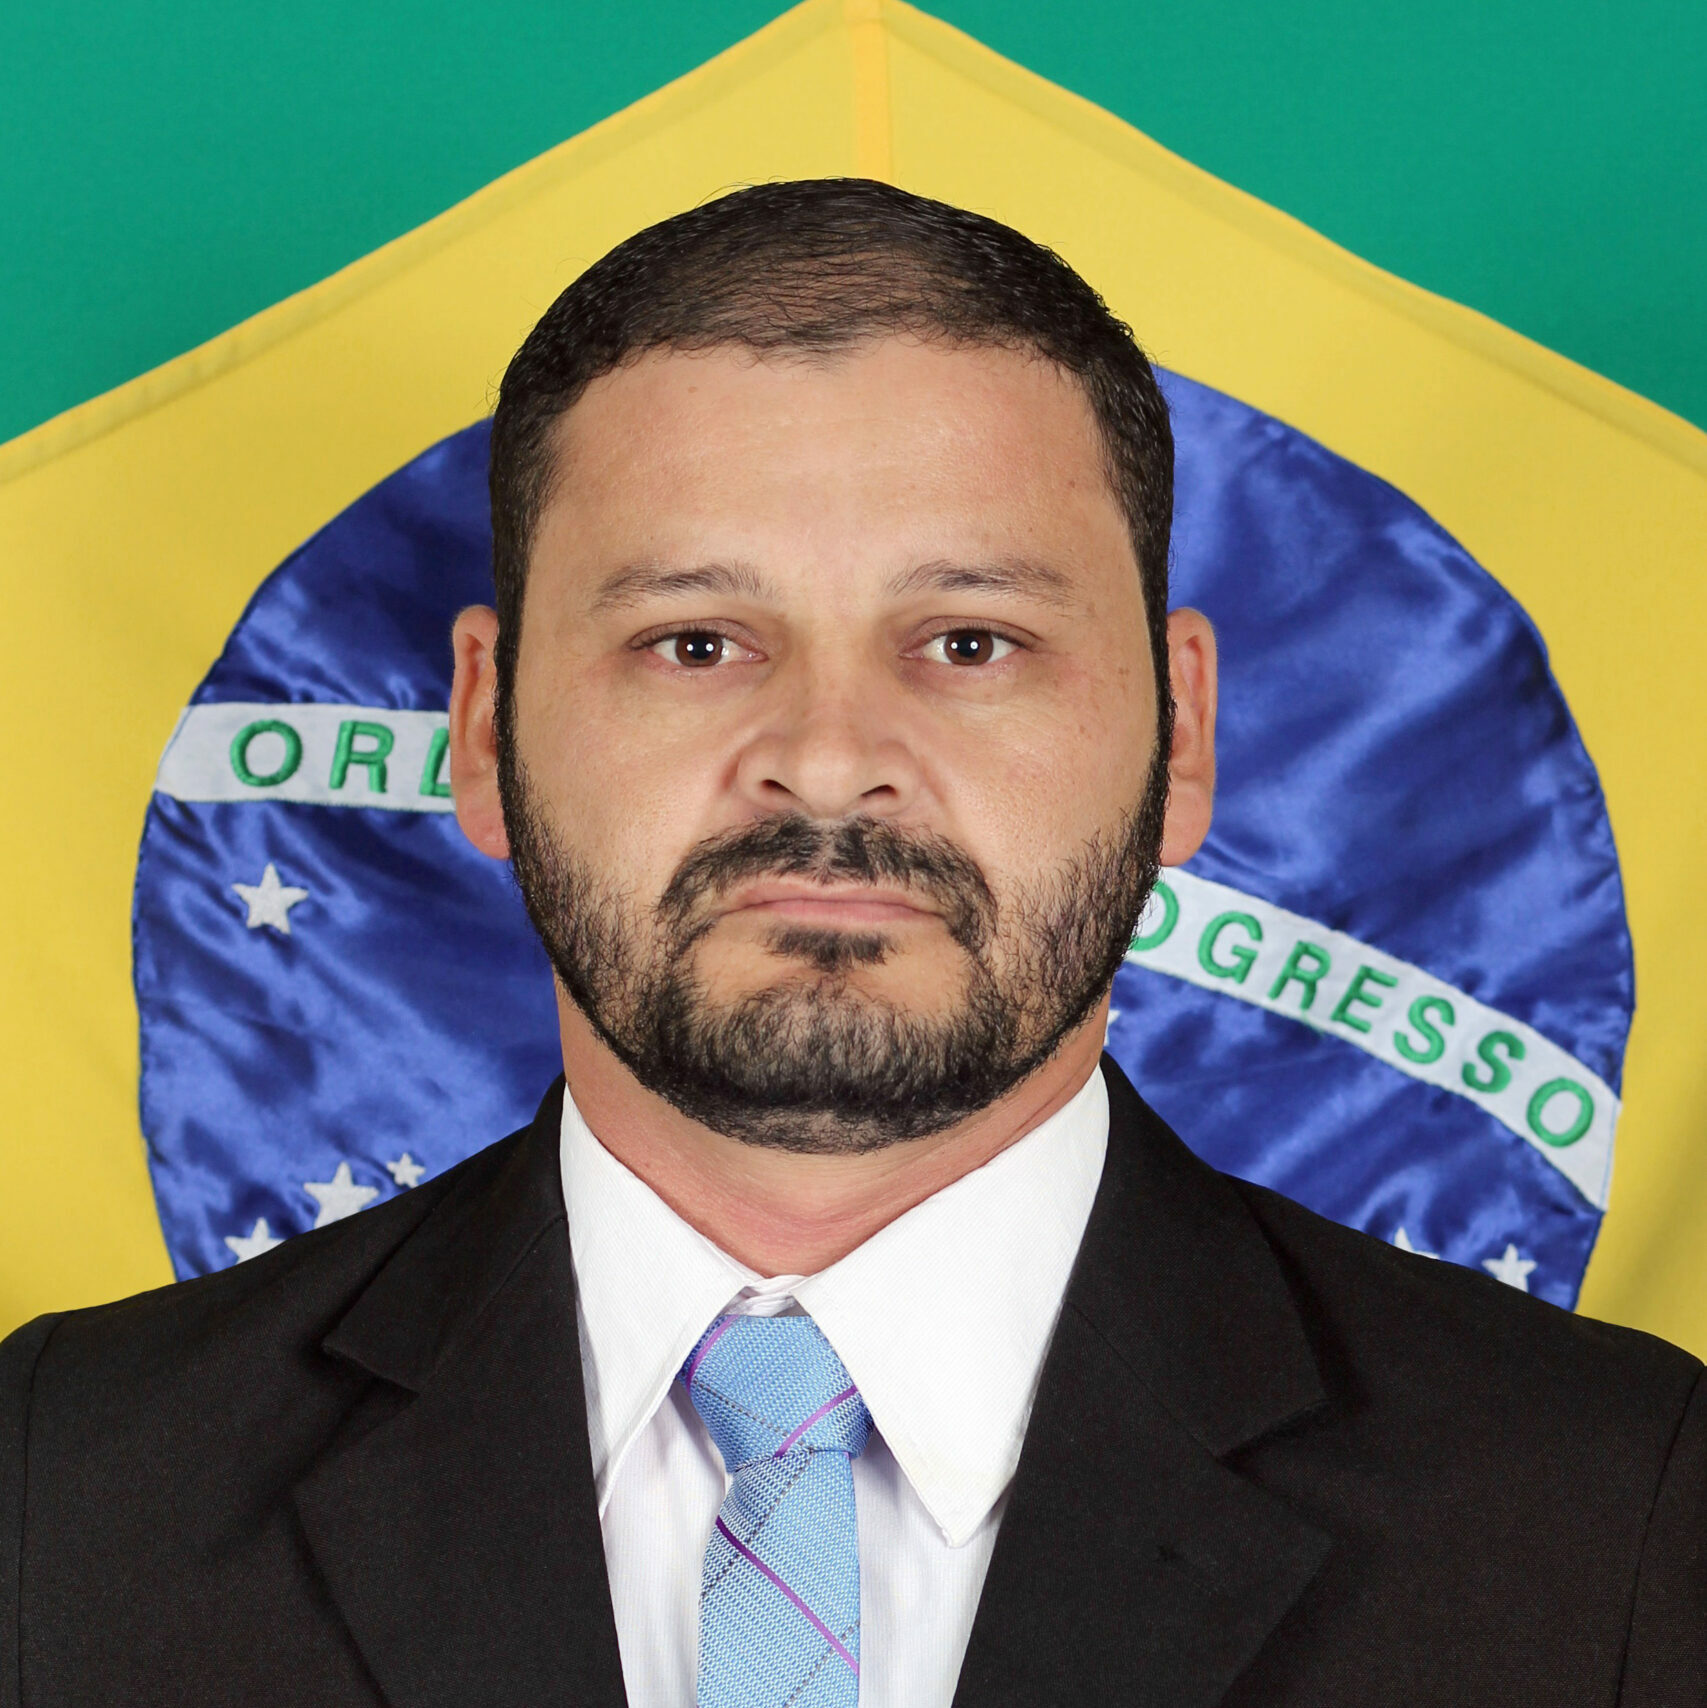 Clério Alves da Silva (Clerim)